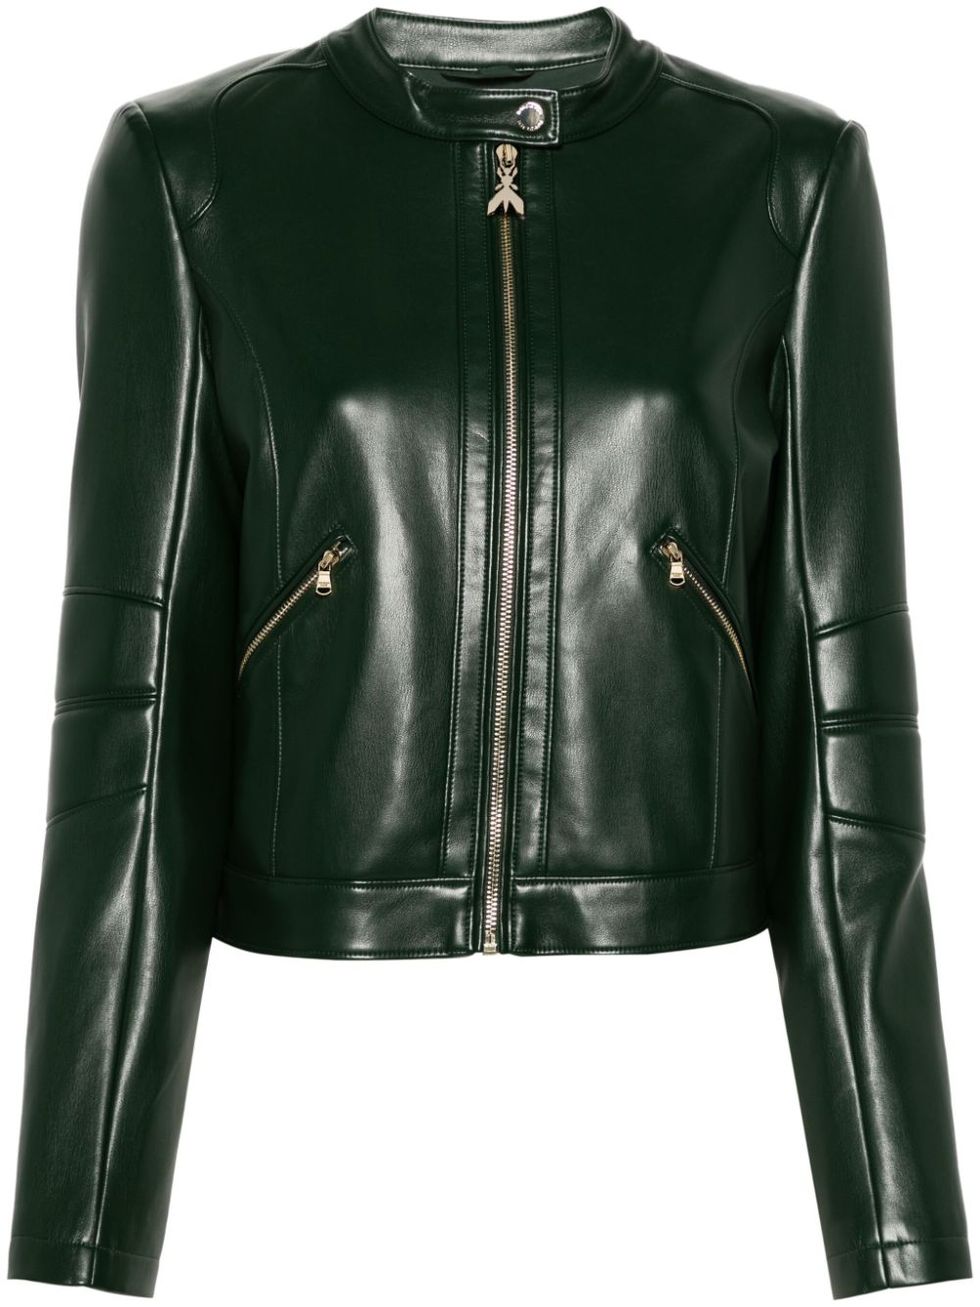 a black jacket with a zipper